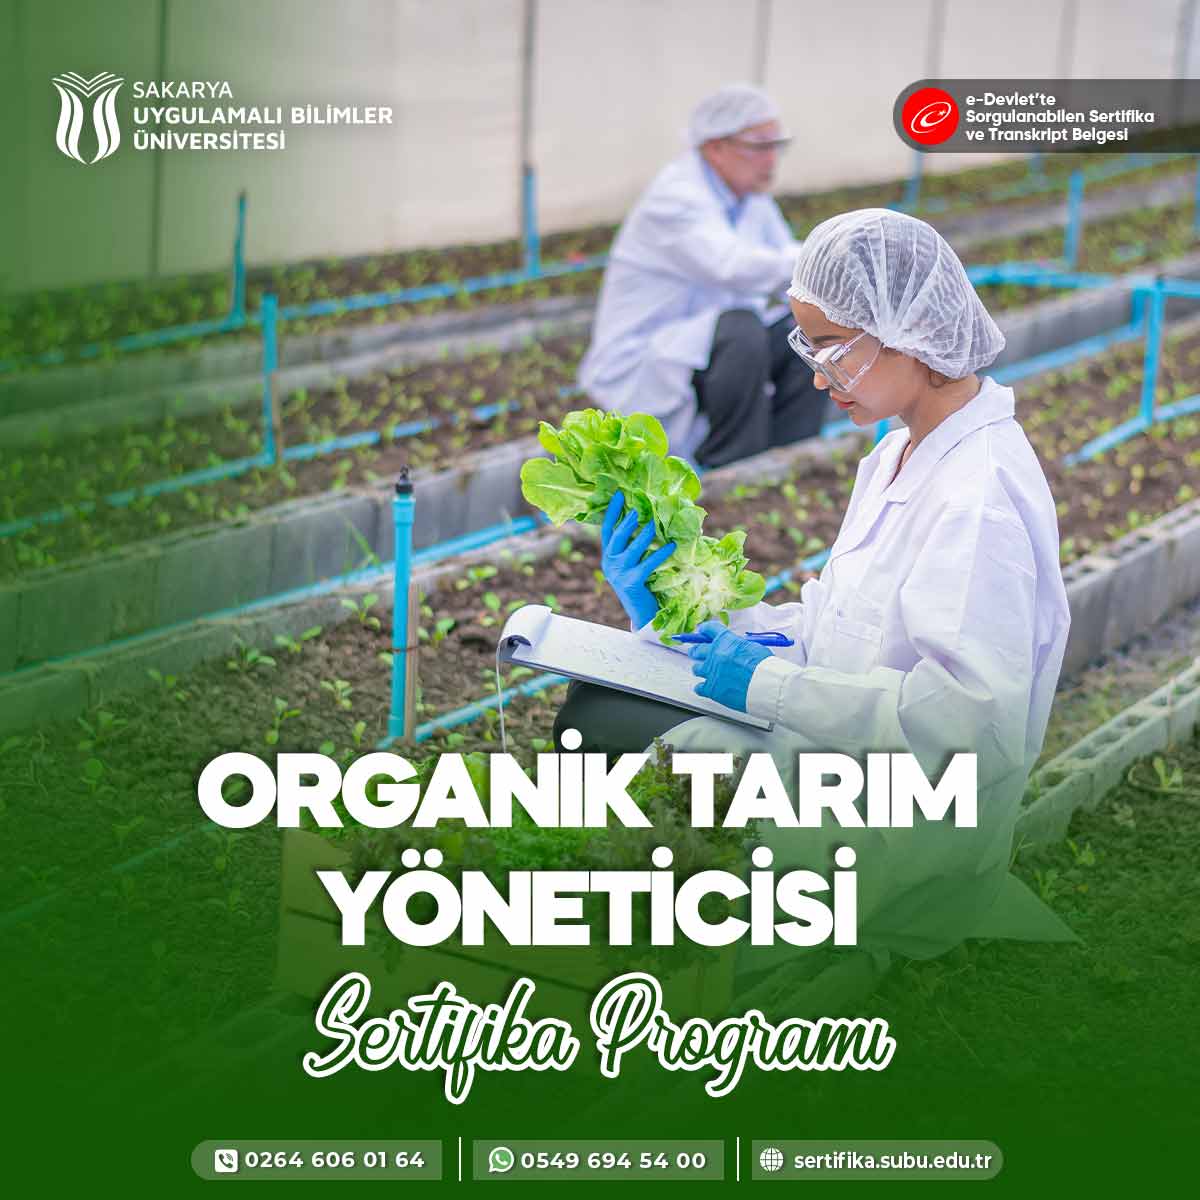 Organik Tarım Yöneticisi Sertifika Programı